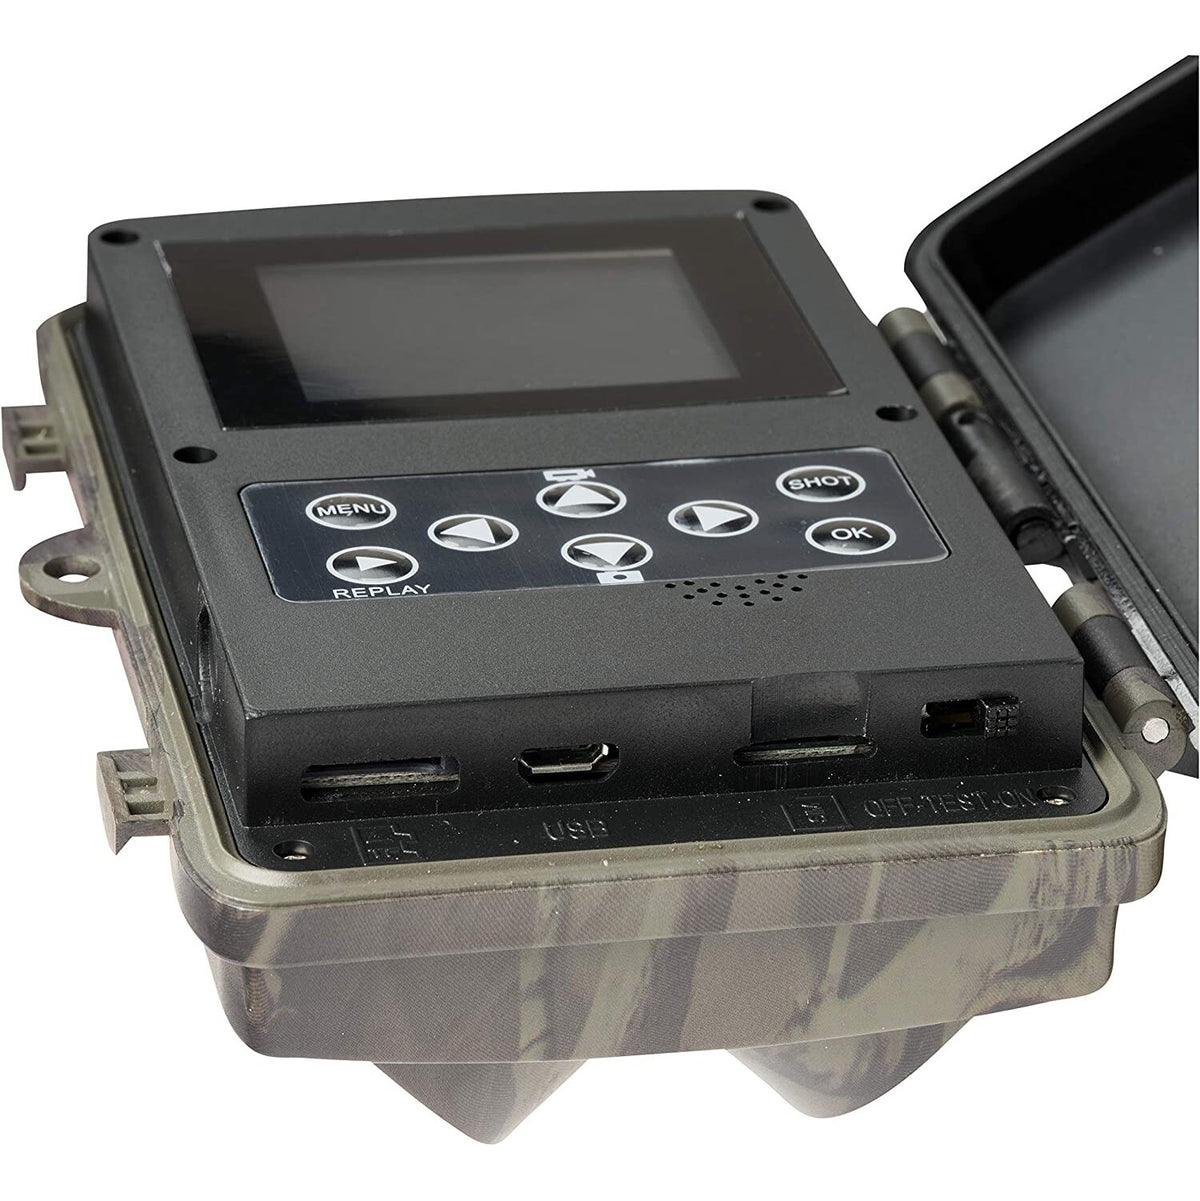 Fotopasca pre sledovanie zveri Denver WCM8010, GSM modul, 8 Mpx